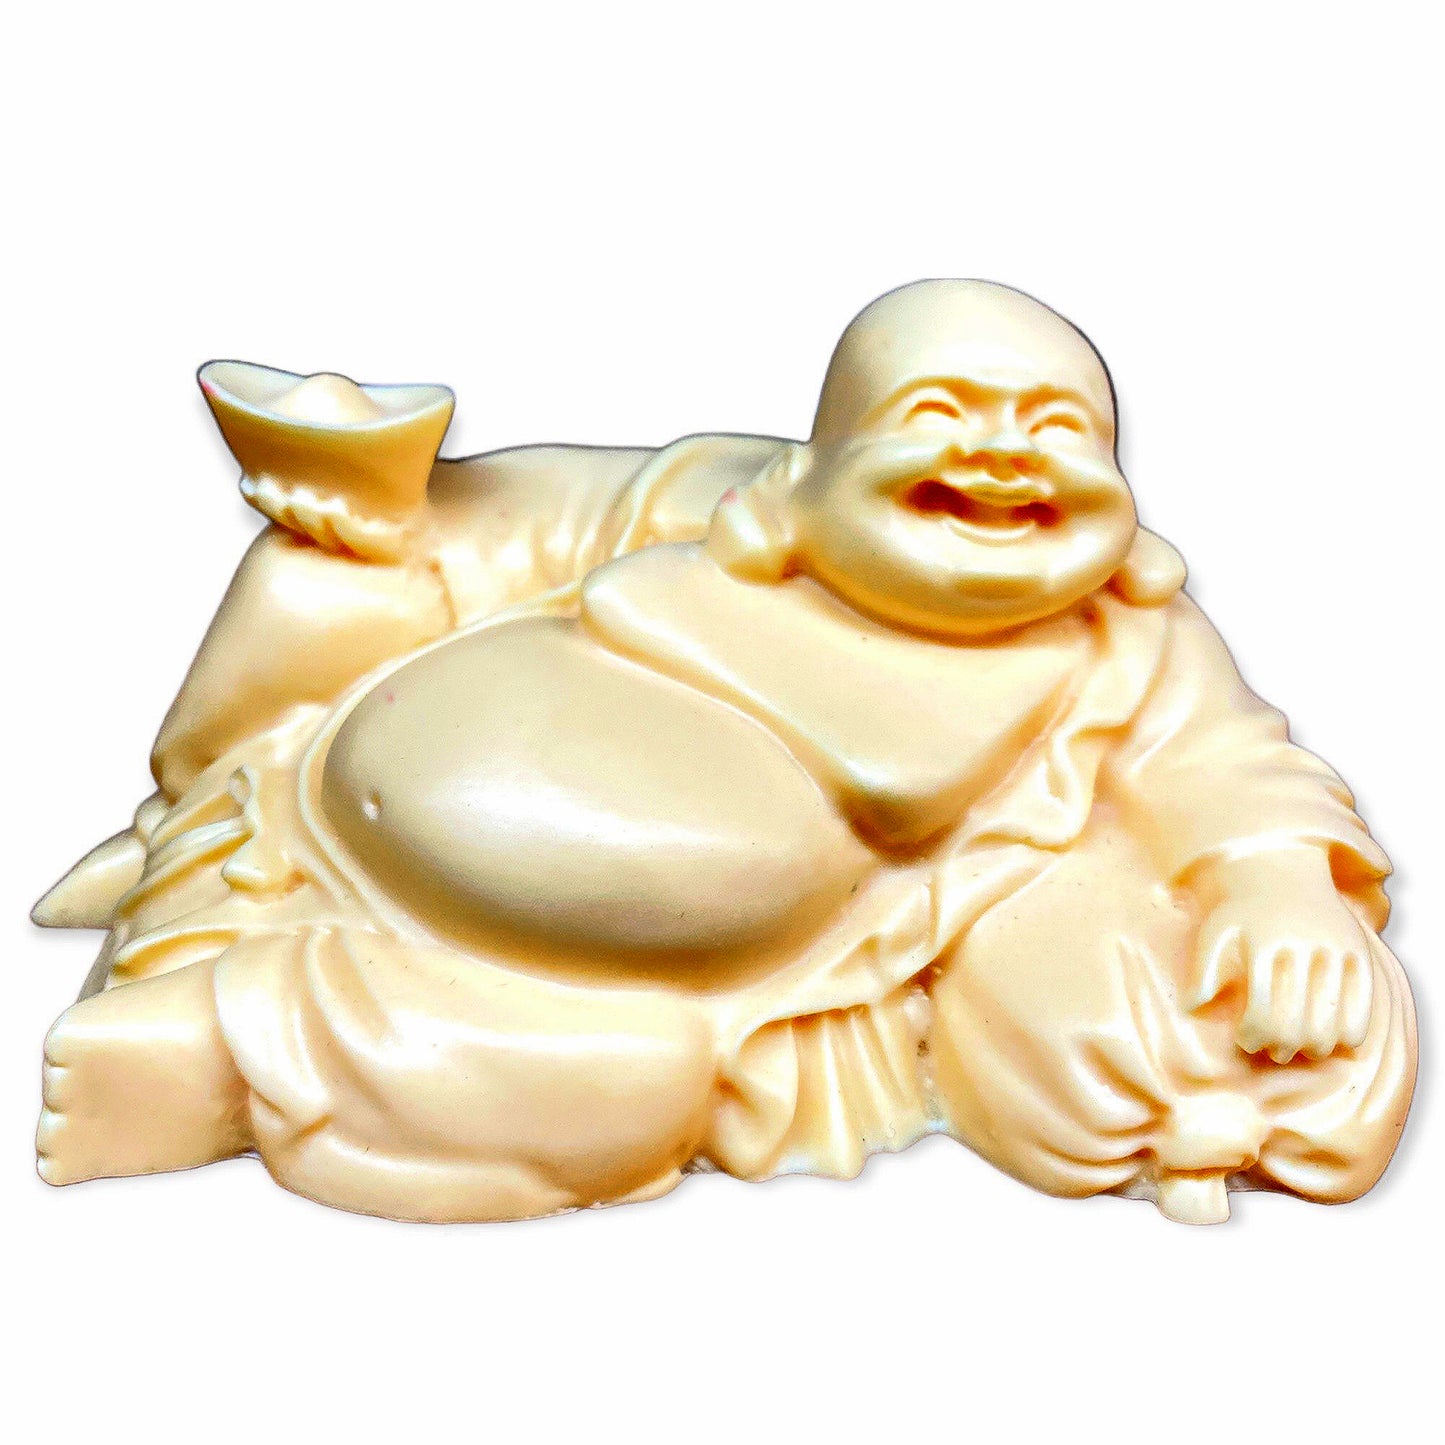 Gros bouddha allongé sculpté en ivoire - 4,5 pouces - 11,5 cm - Chine - NEW1022